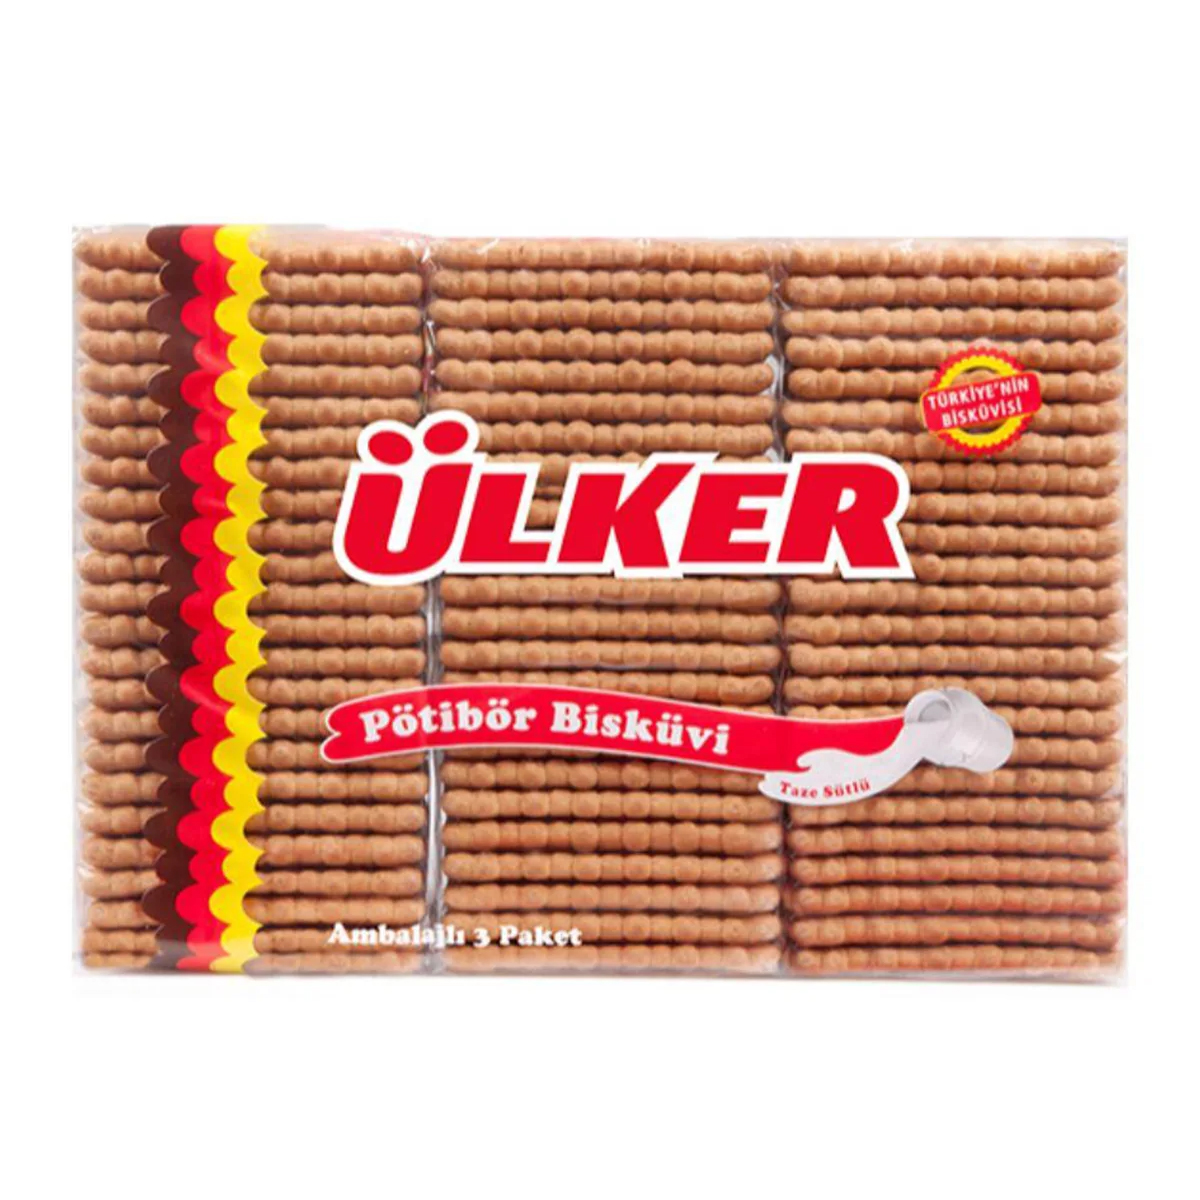 Печенье Ulker Petit Beurre двойной обжарки, 450 г